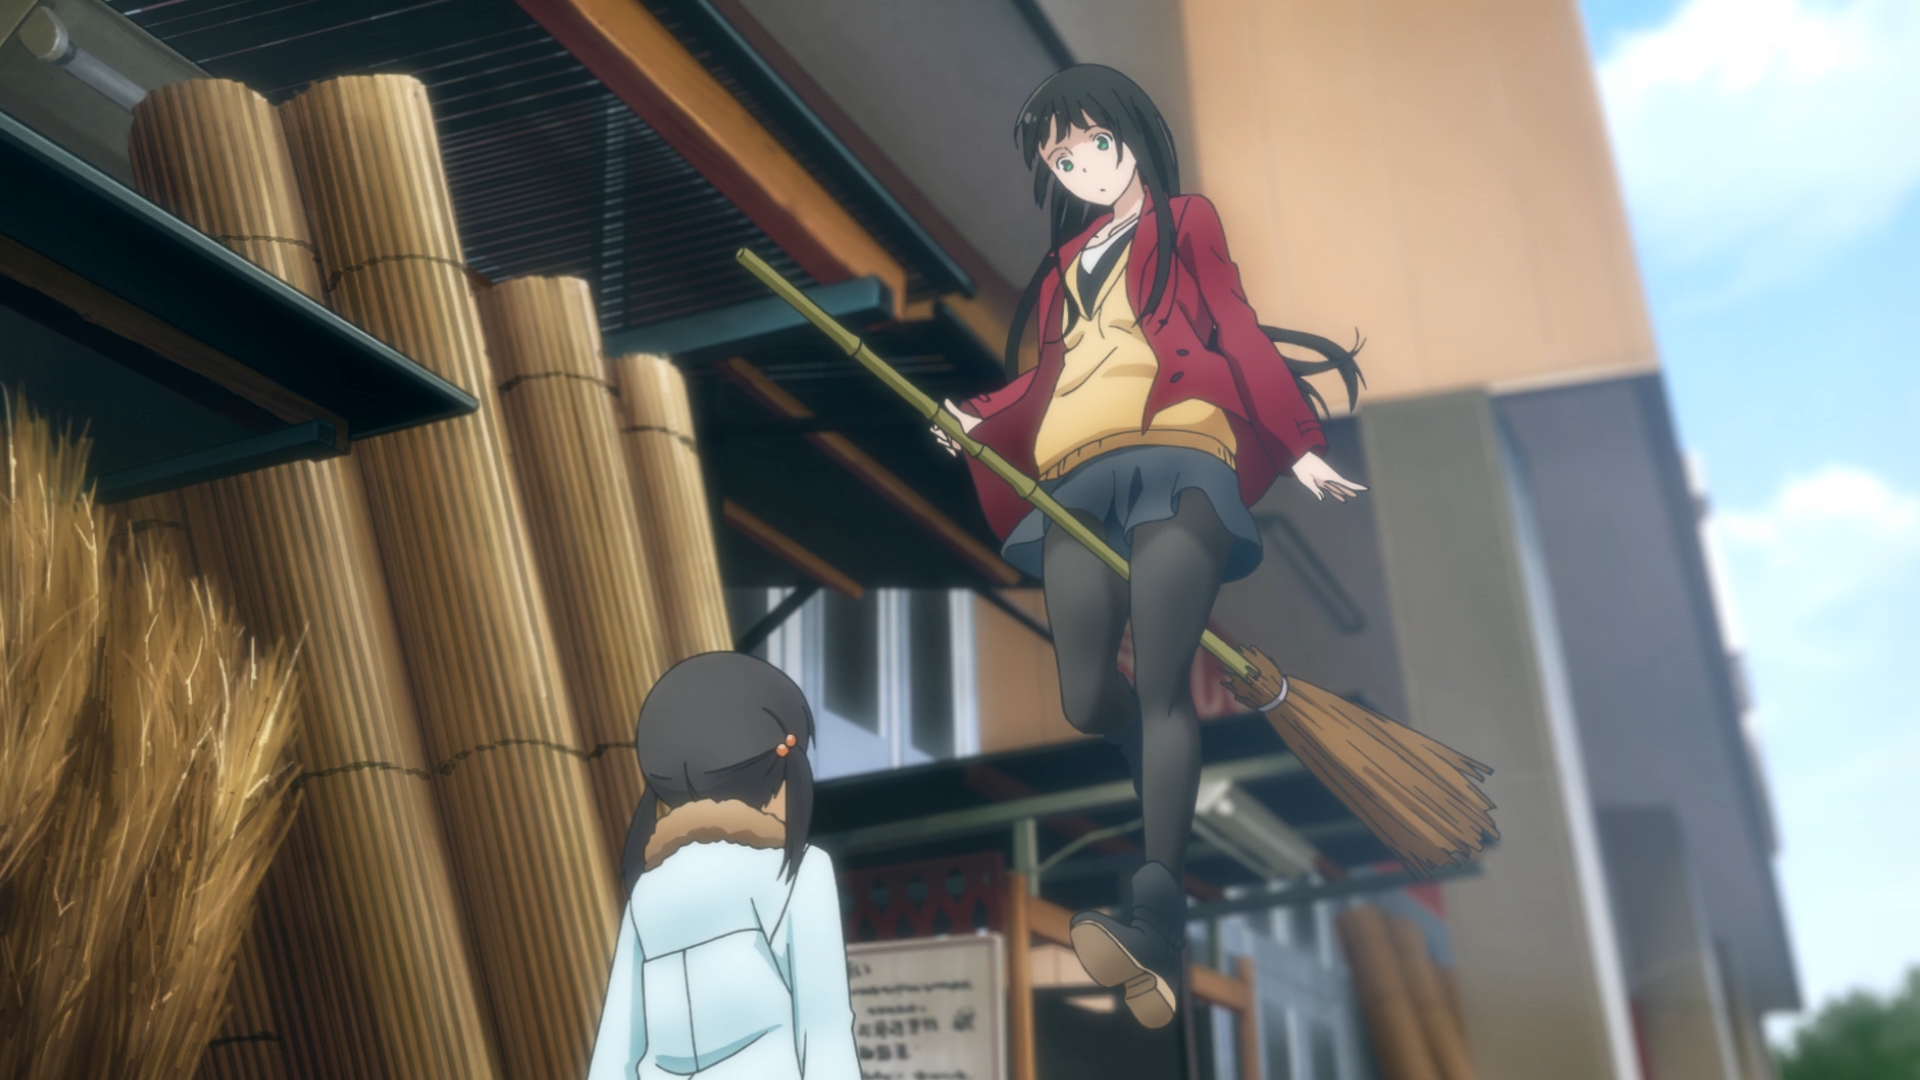 Makoto impresiona inadvertidamente a Chinatsu mientras prueba una escoba de bambú por sus cualidades flotantes en una escena del anime de televisión Flying Witch.